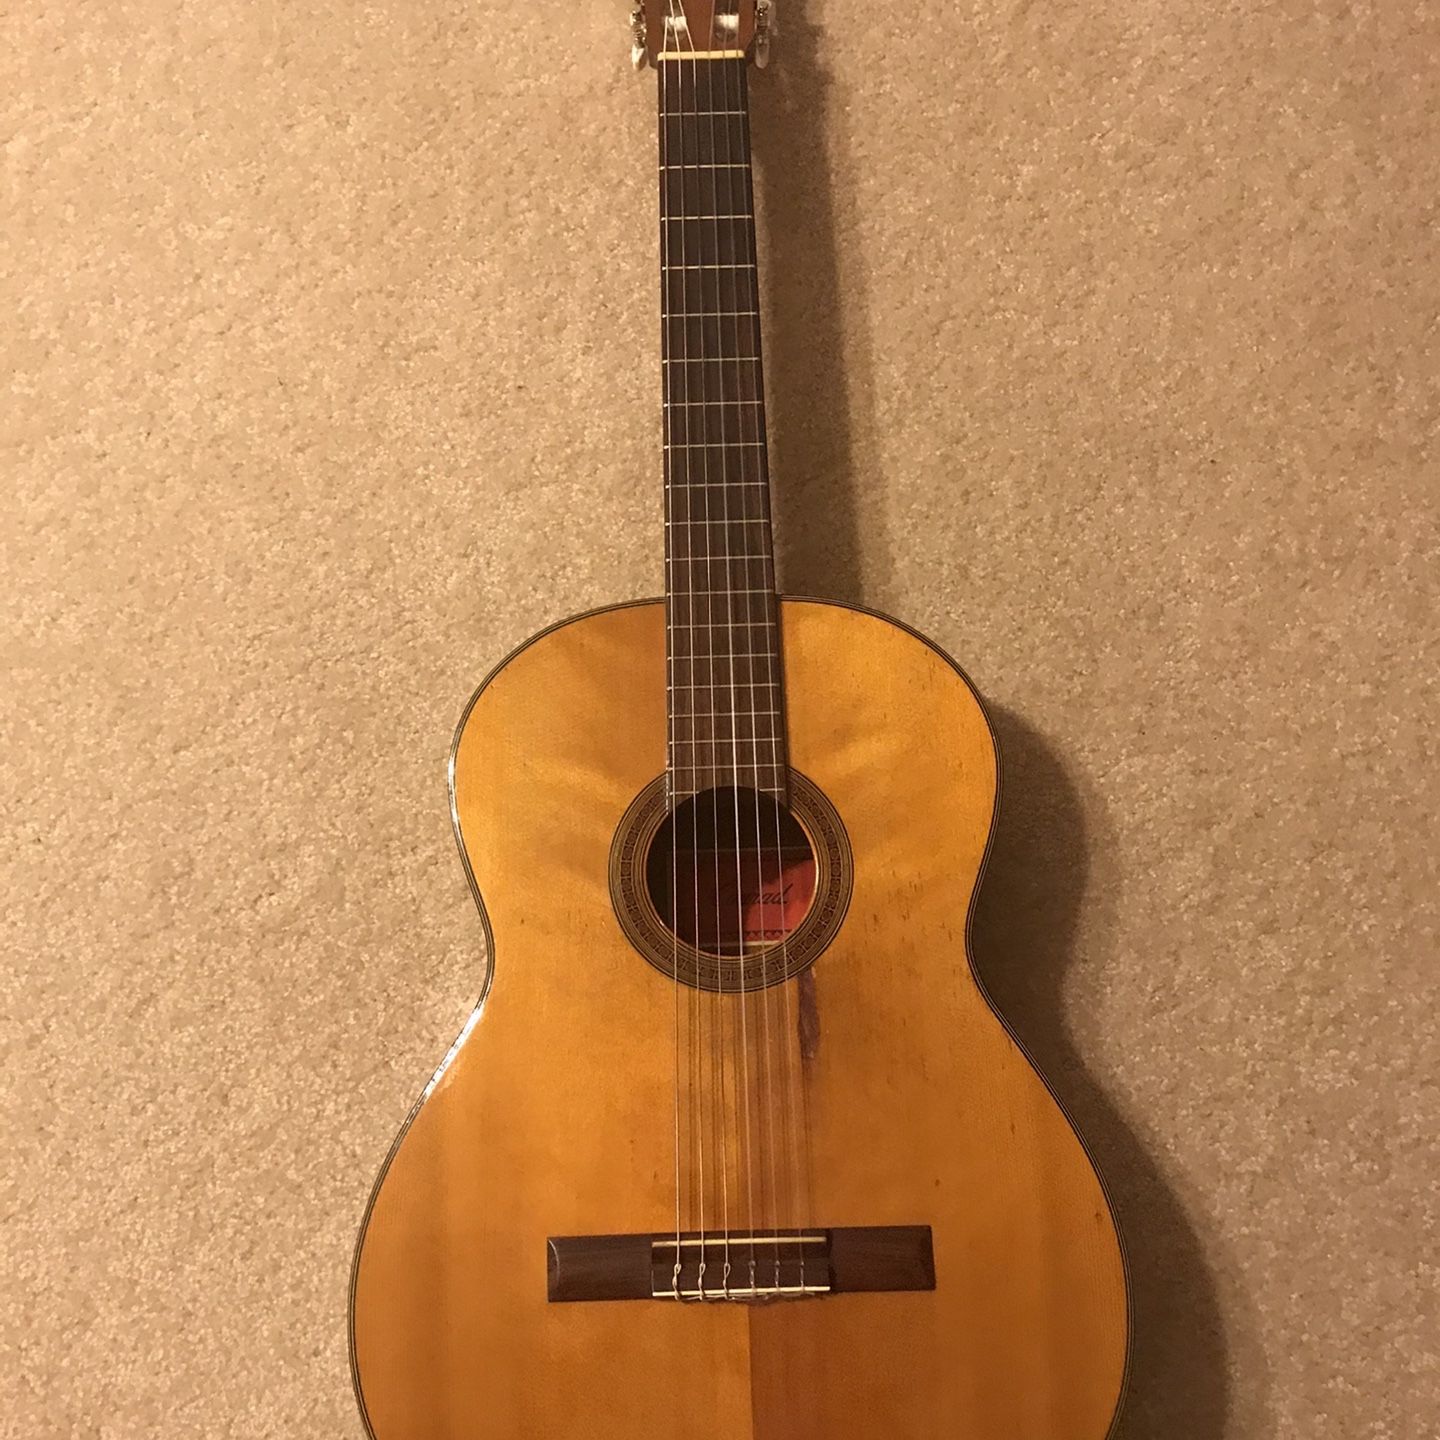 Vintage Nylon Acoustic Guitar